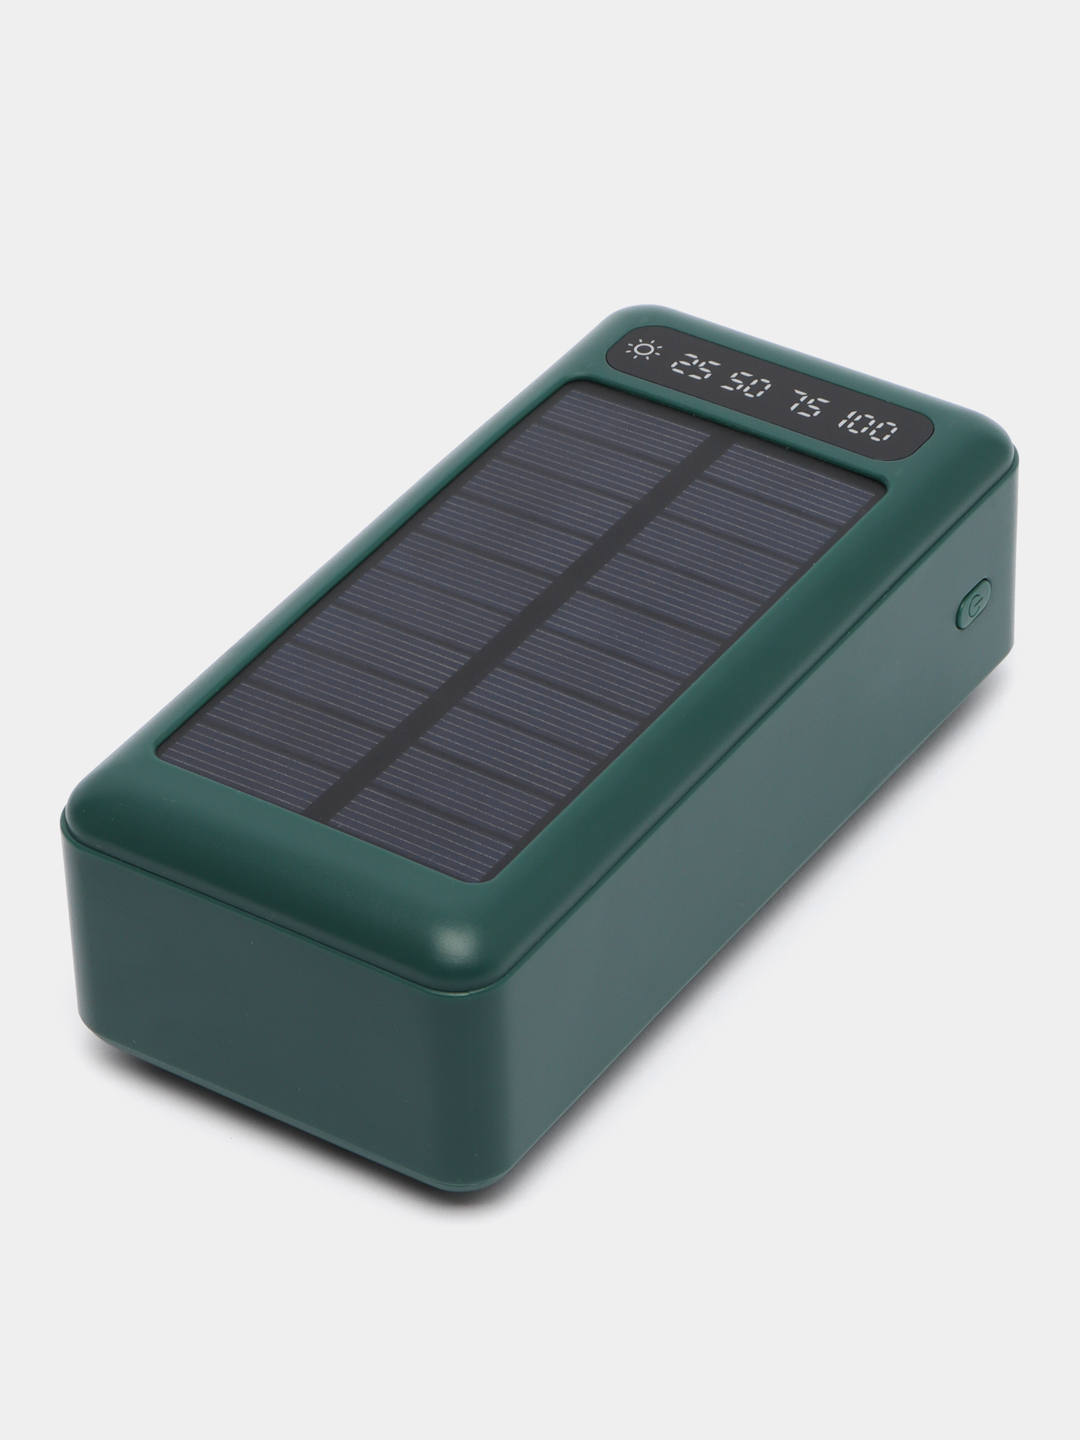 Зарядное устройство на солнечных батареях необходимо: